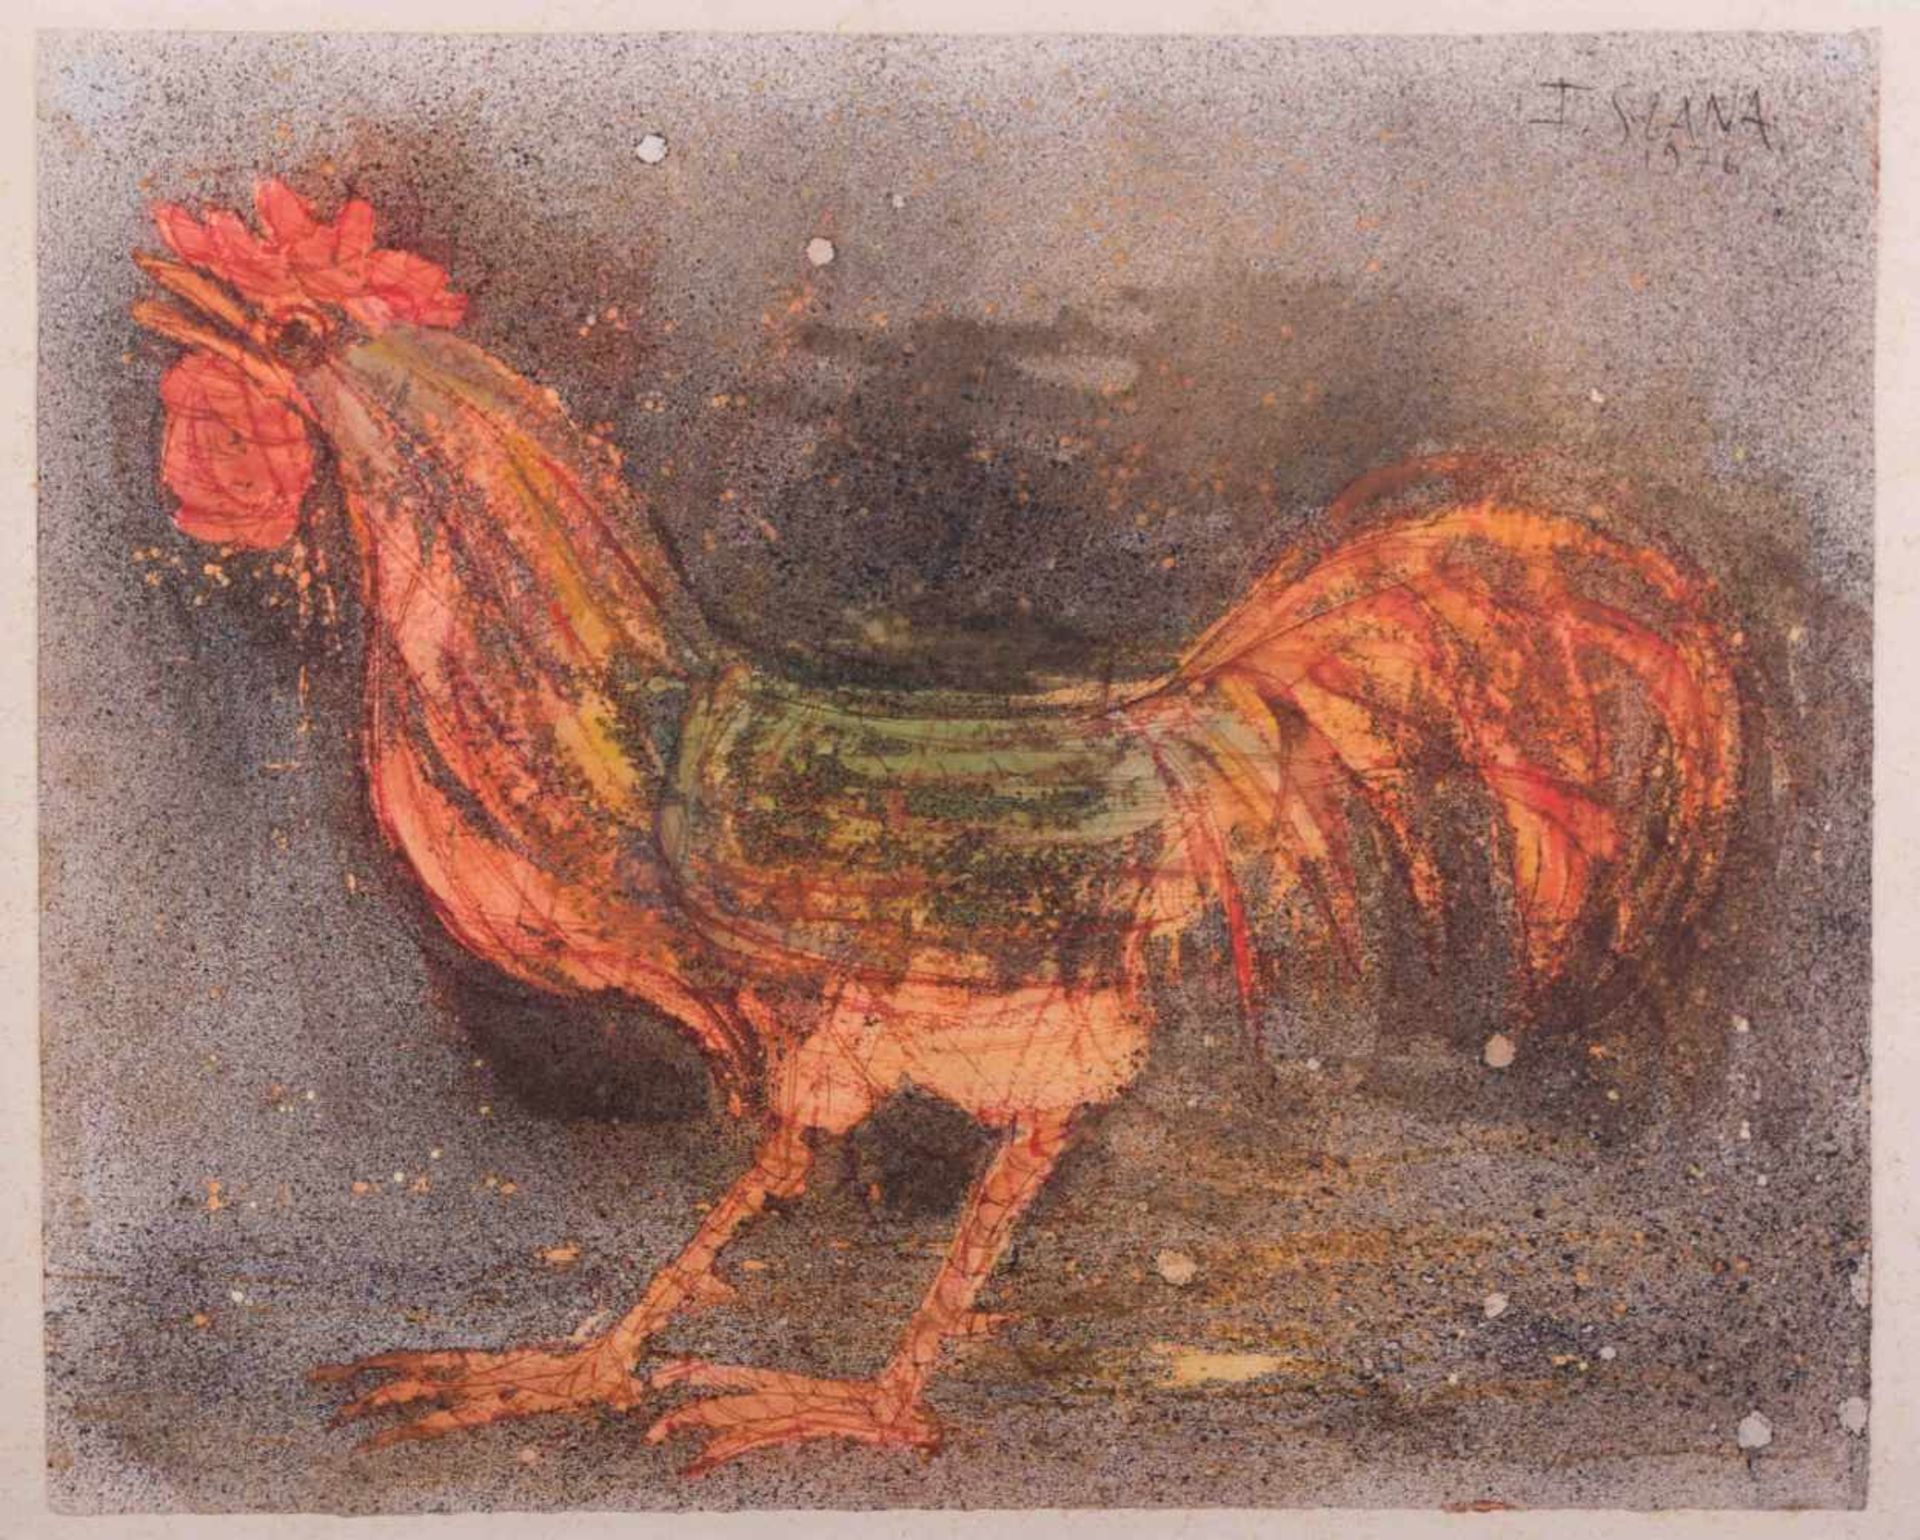 France SLANA (1926) "Hahn" Zeichnung-Mischtechnik auf Papier, 36,5 cm x 45 cm, rechts oben